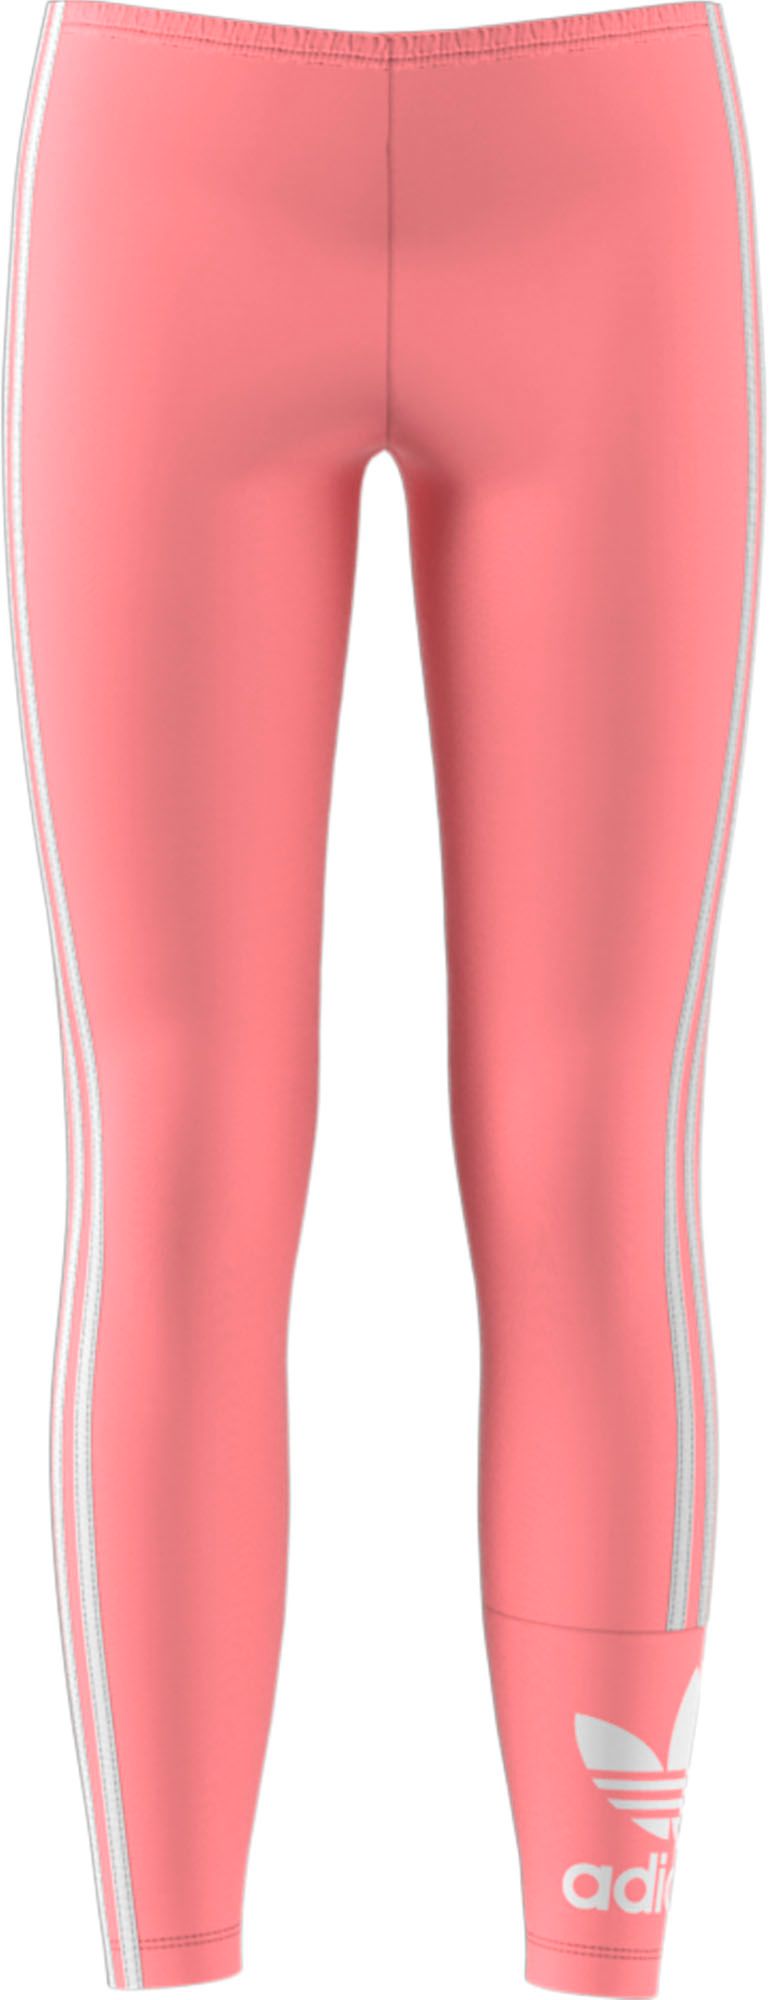 girls pink adidas leggings